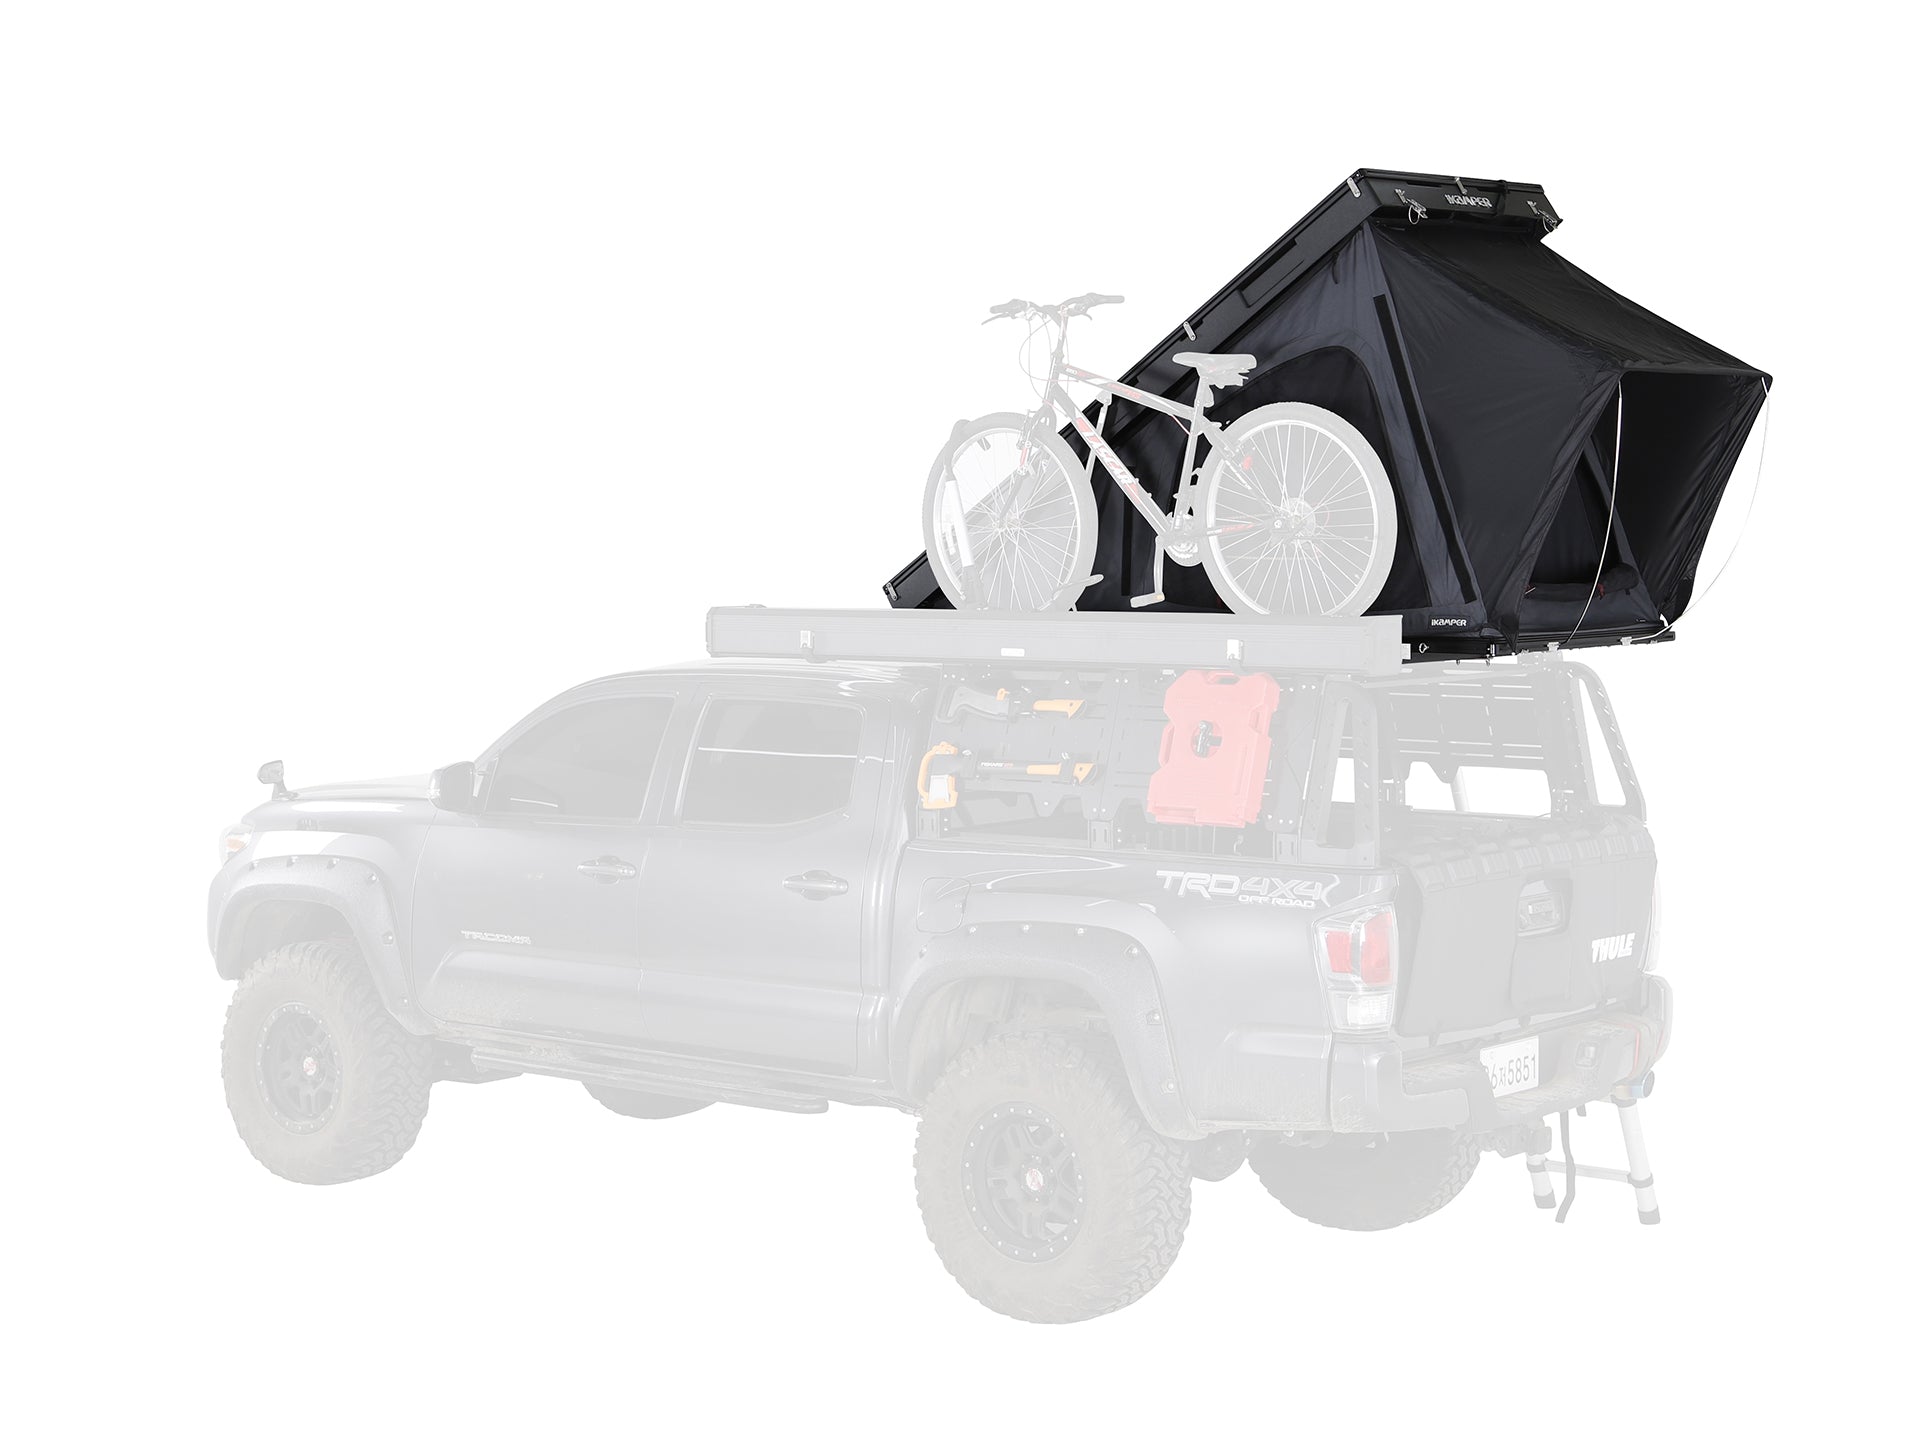 iKamper BDV Solo - Assembled-Tent-iKamper-upTOP Overland